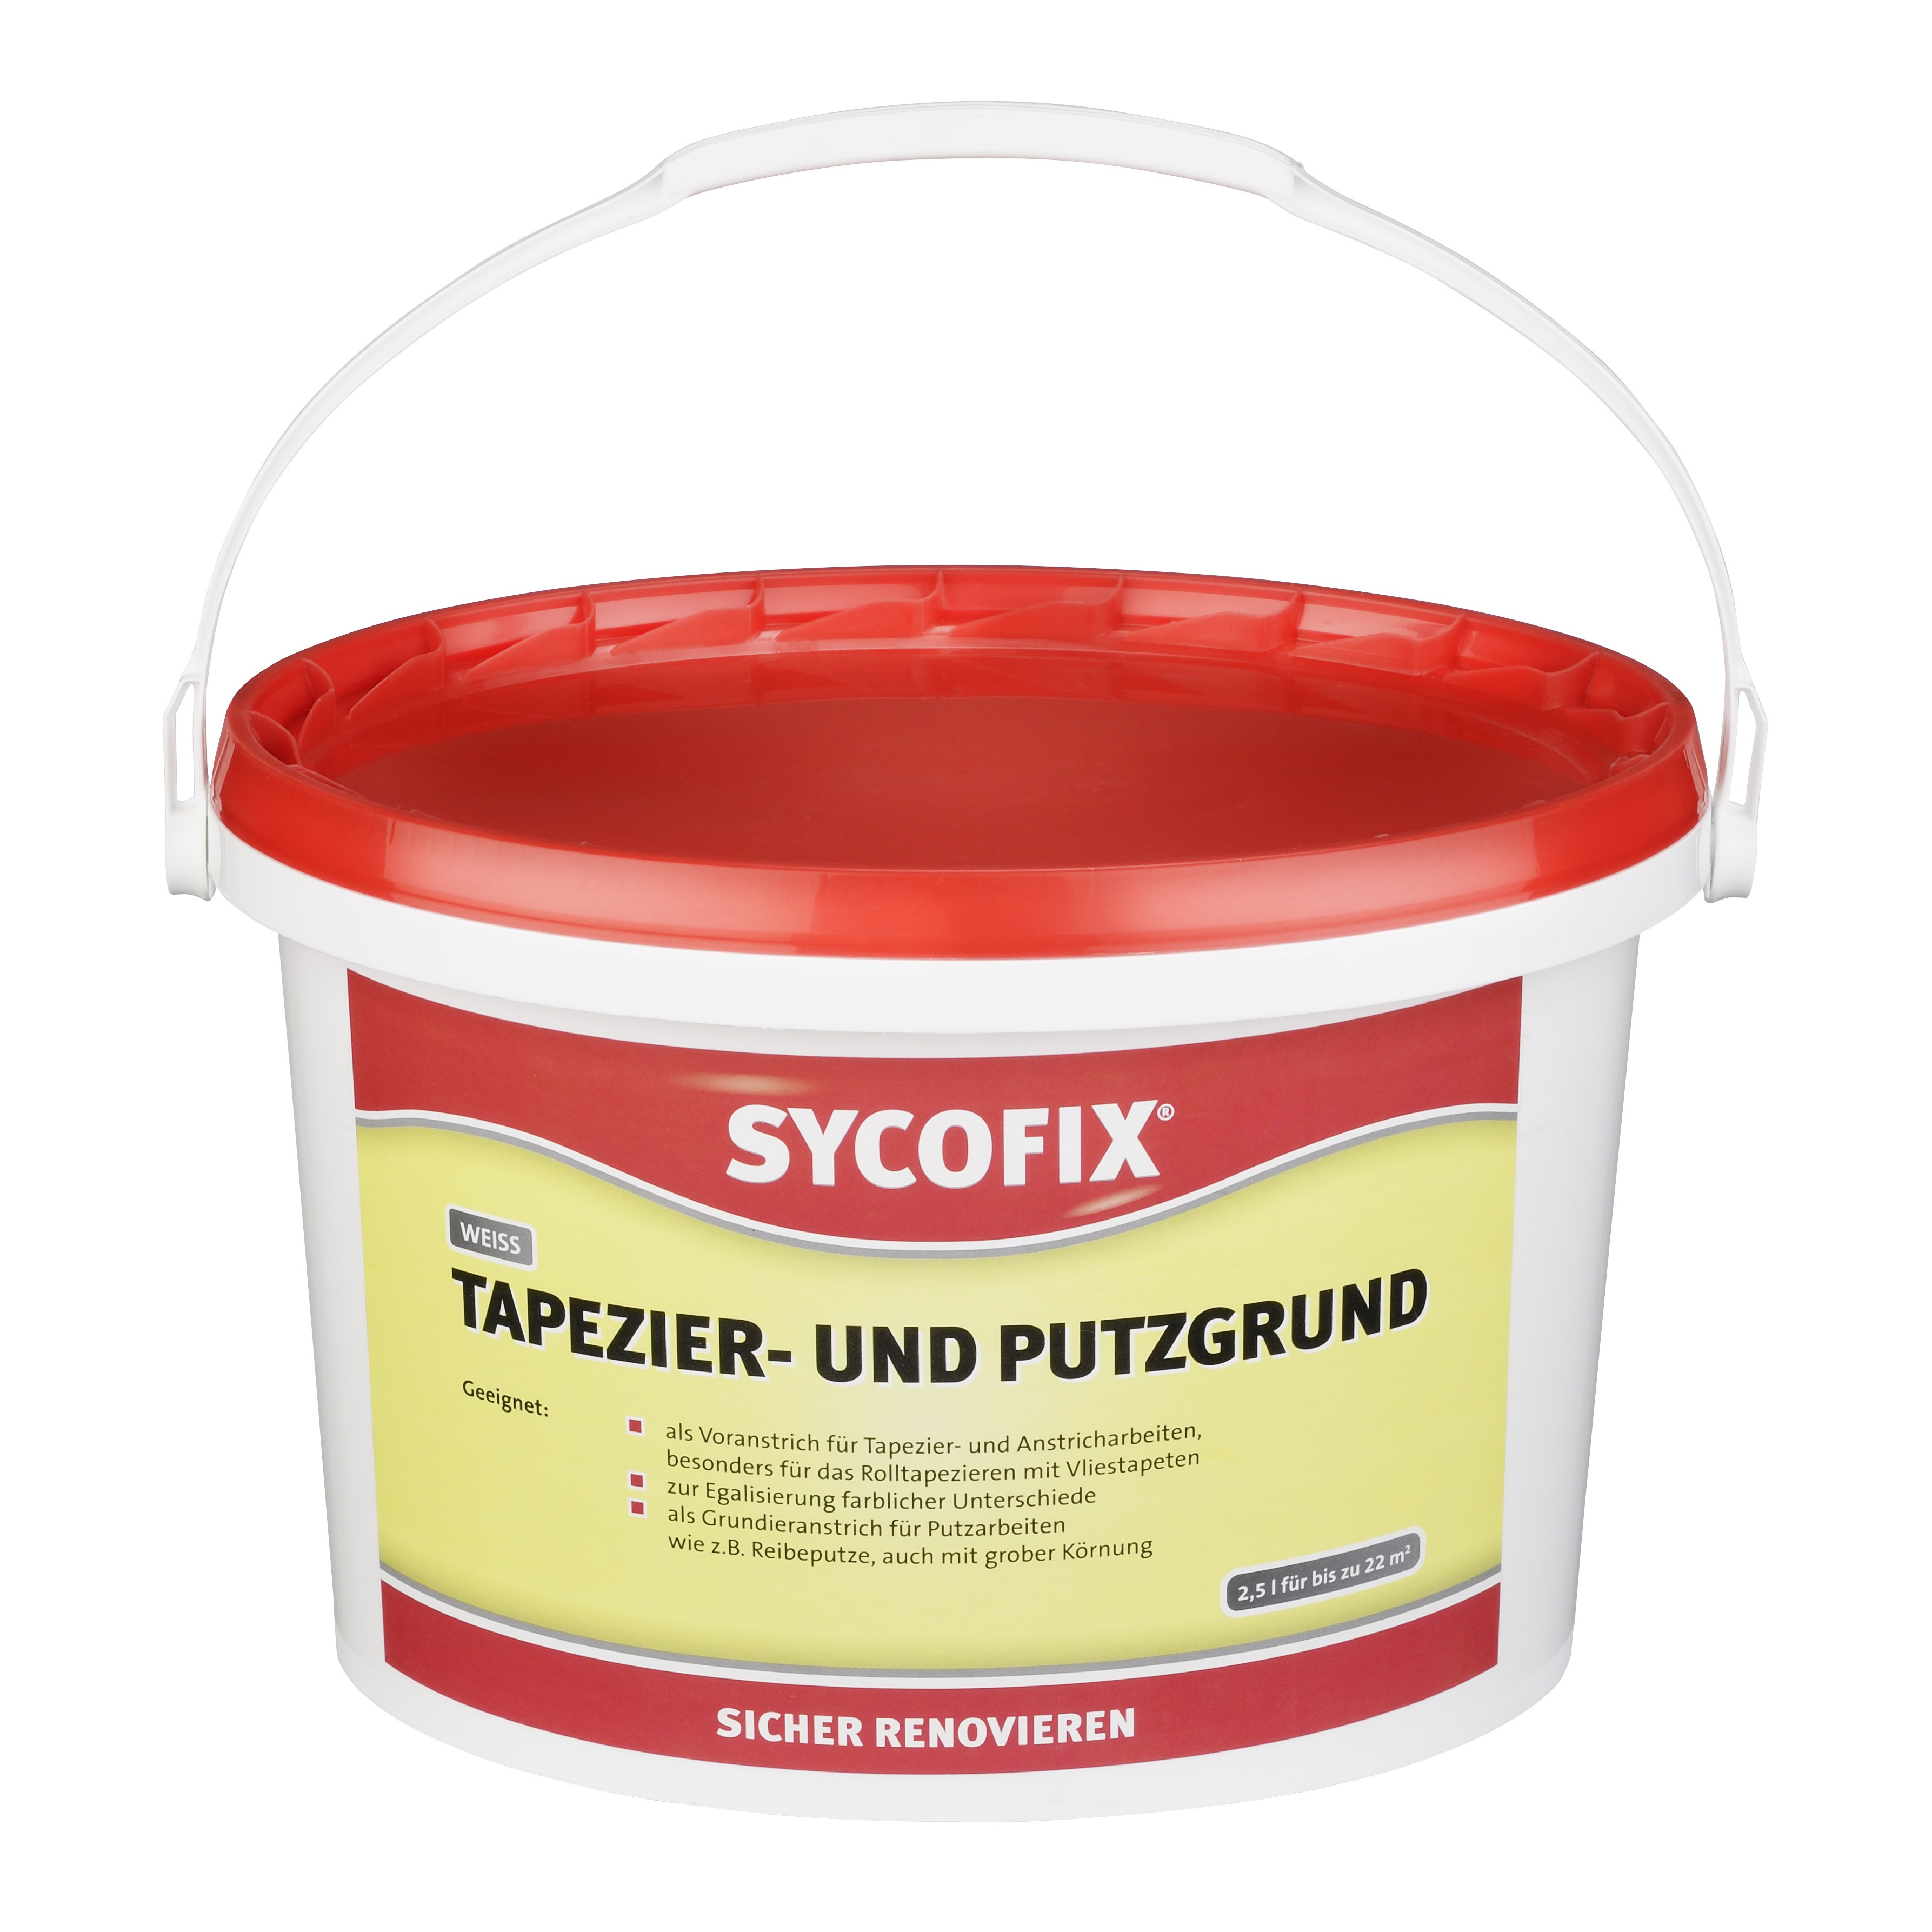 SYCOFIX® Tapezier- und Putzgrund 2,5l